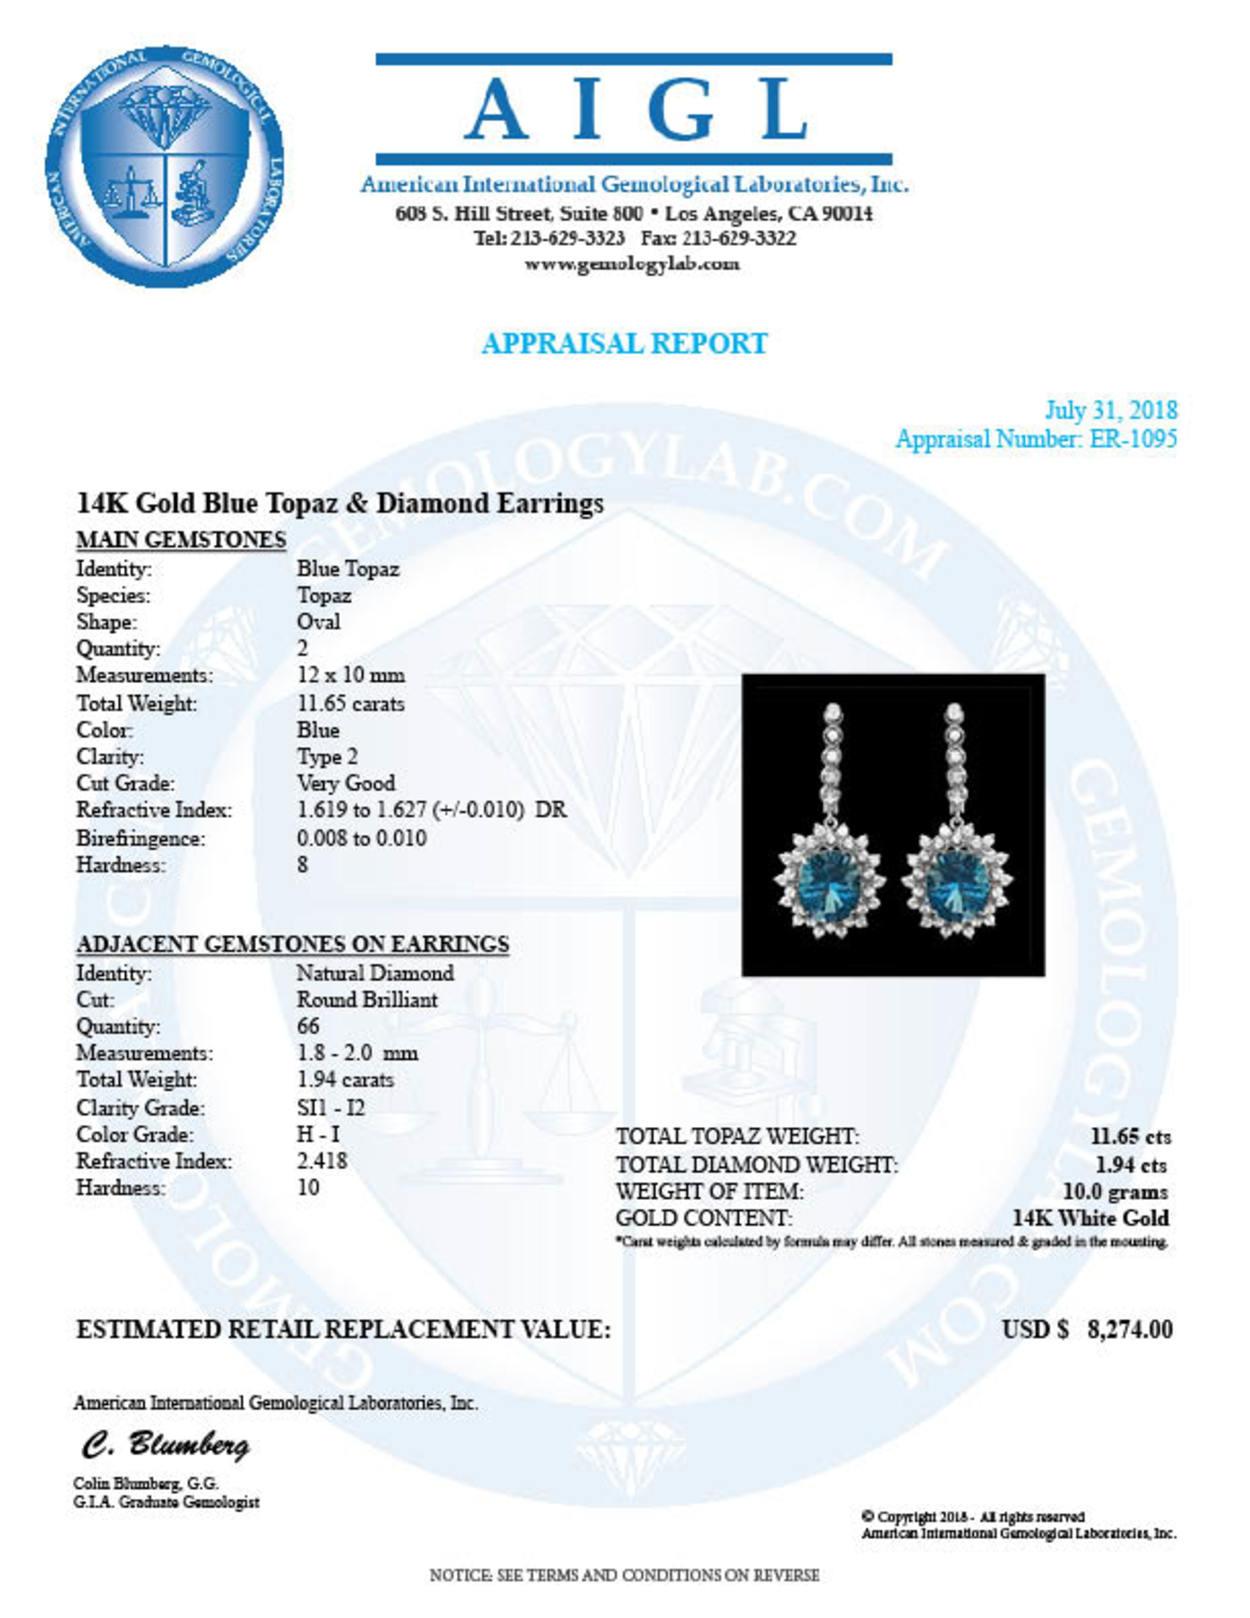 14k Gold 11.65ct Topaz 1.94ct Diamond Earrings